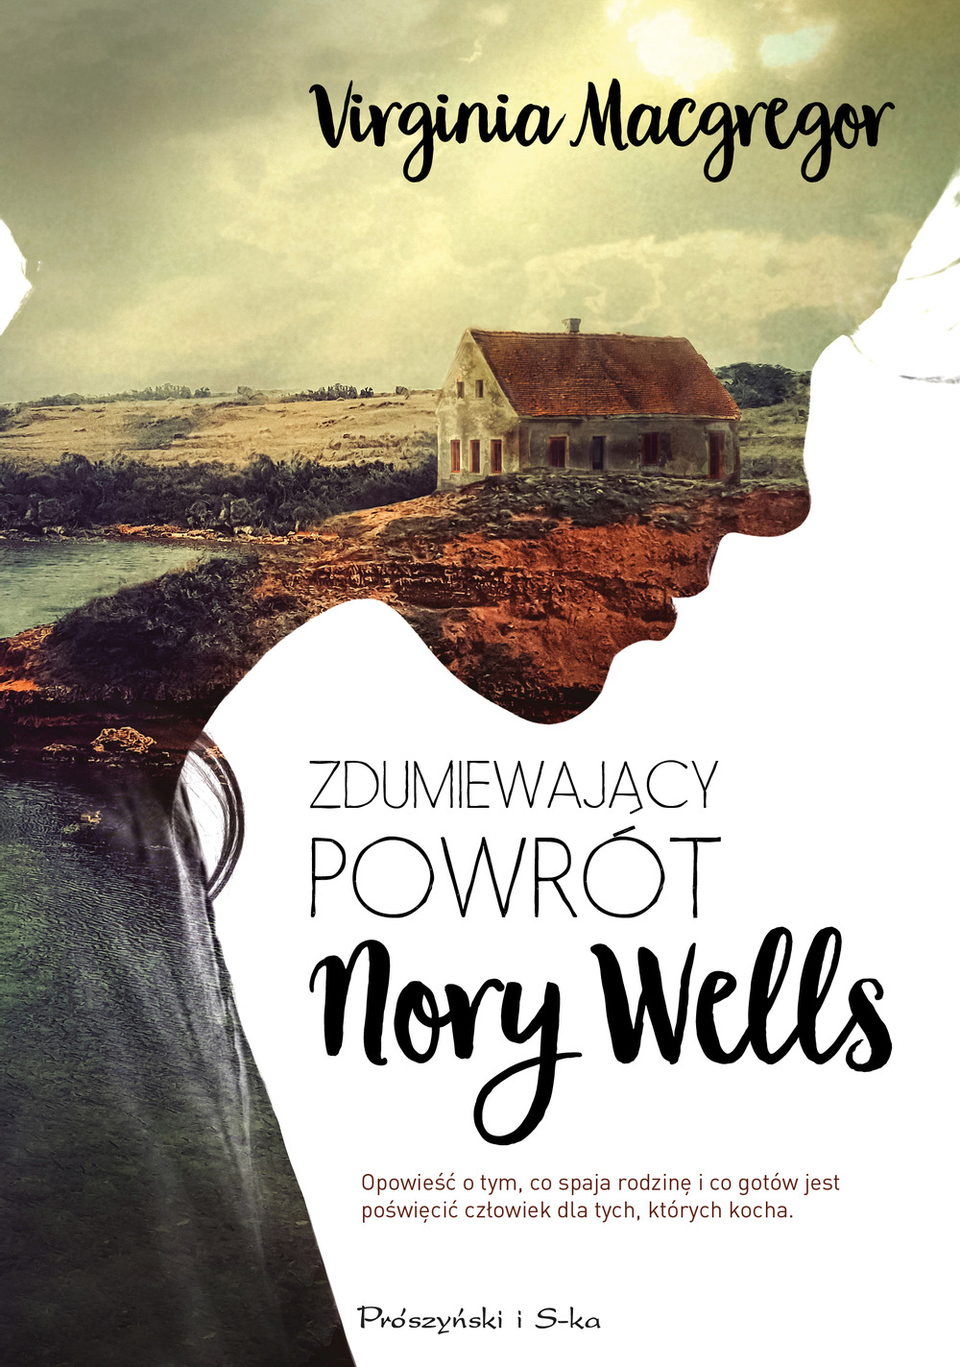 ''Zdumiewający powrót Nory Wells'' - Virginia Macgregor - Czytelnicze recenzje